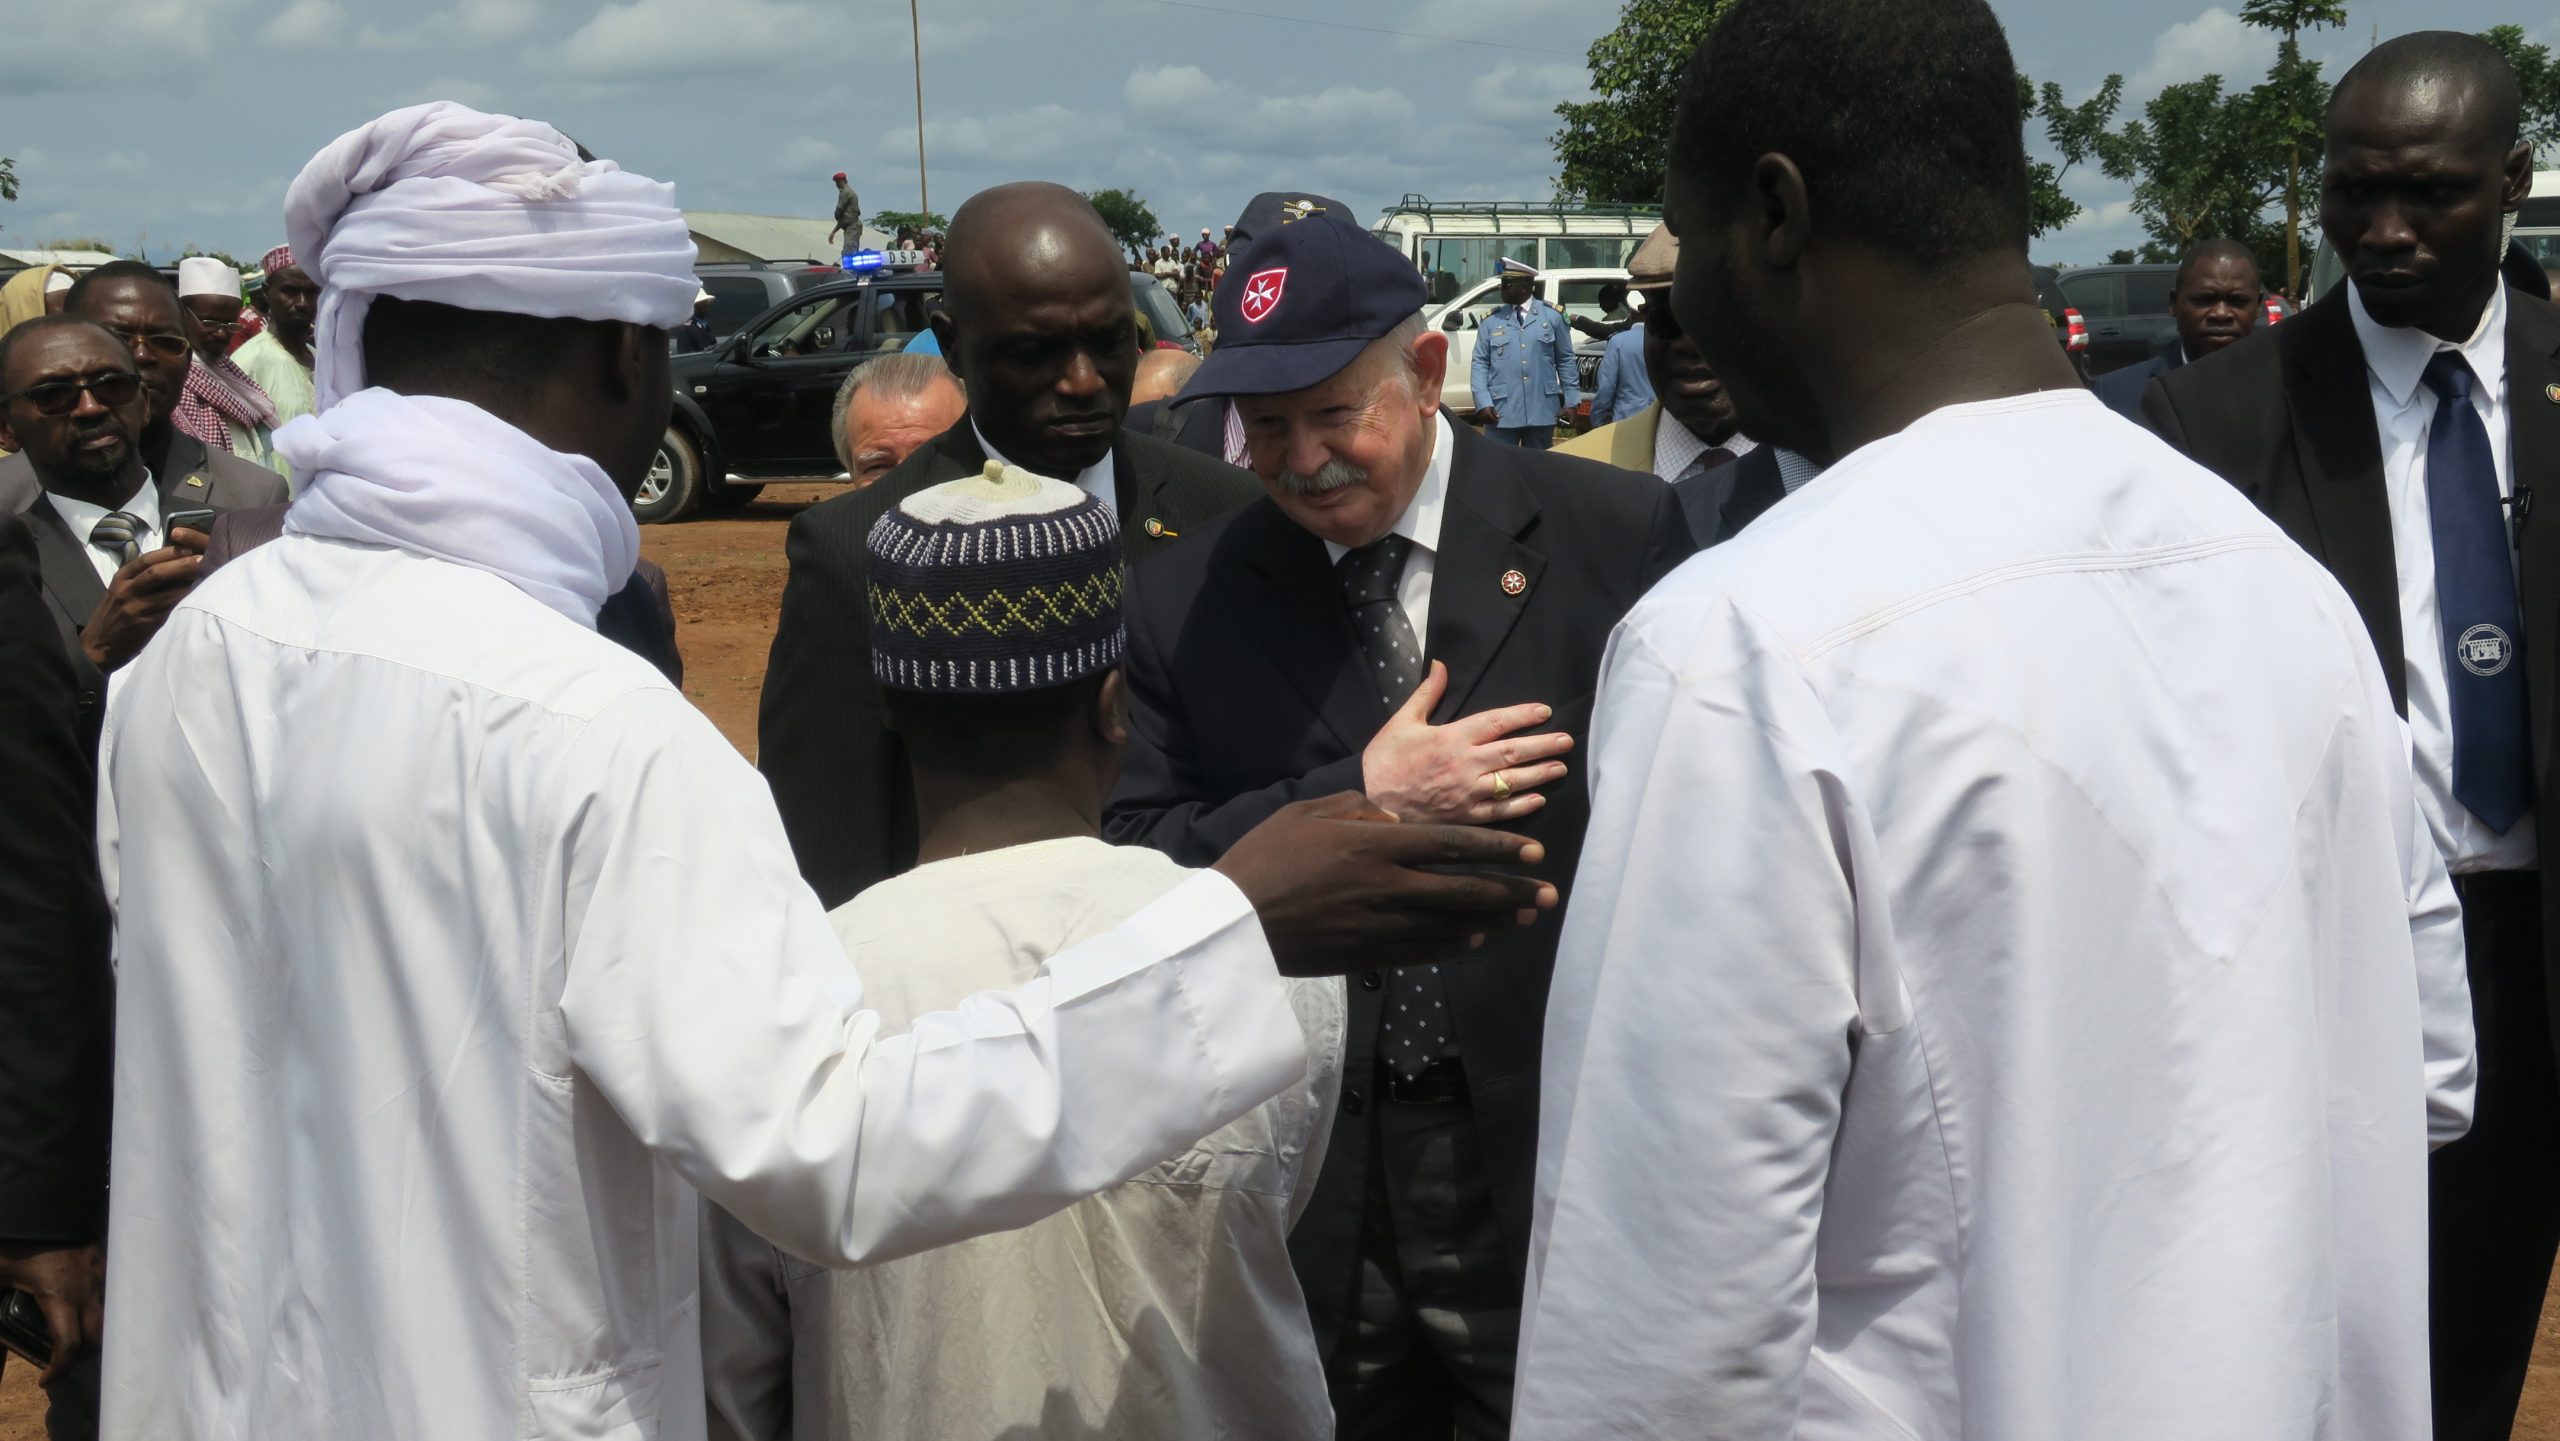 Le Grand Maître en visite d’État au Cameroun